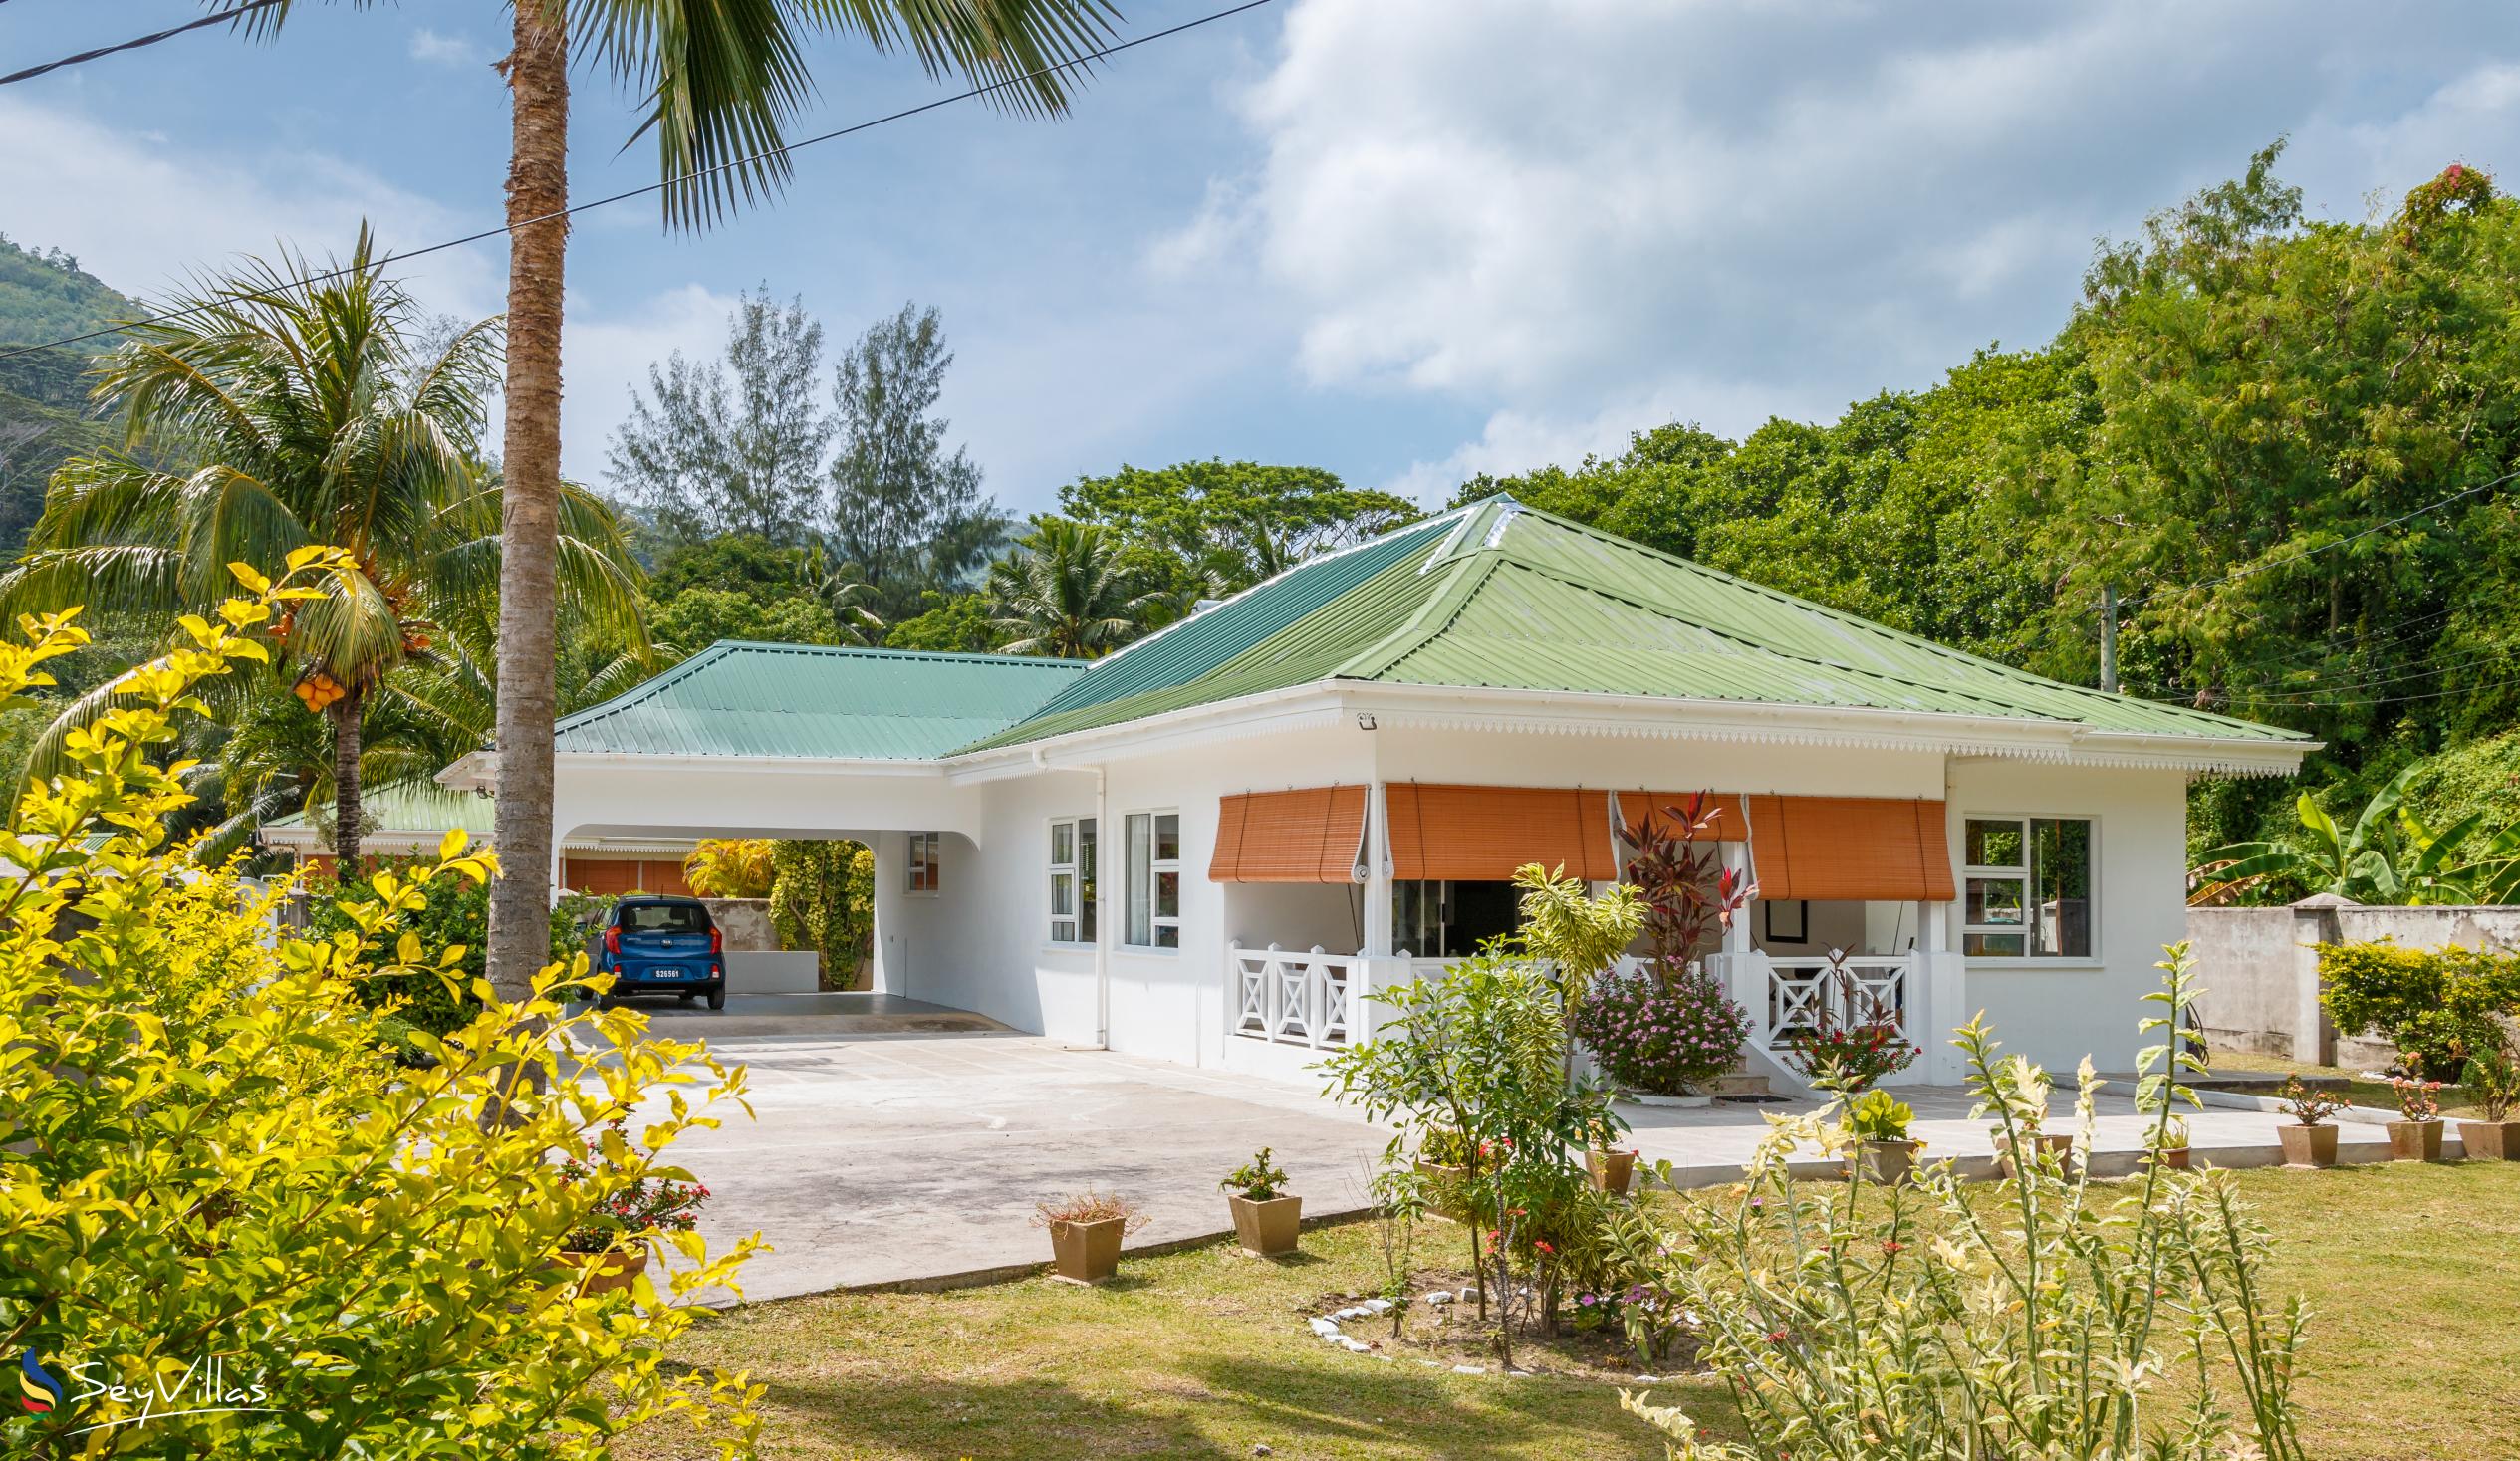 Foto 1: Coco Blanche (Maison Coco) - Extérieur - Mahé (Seychelles)